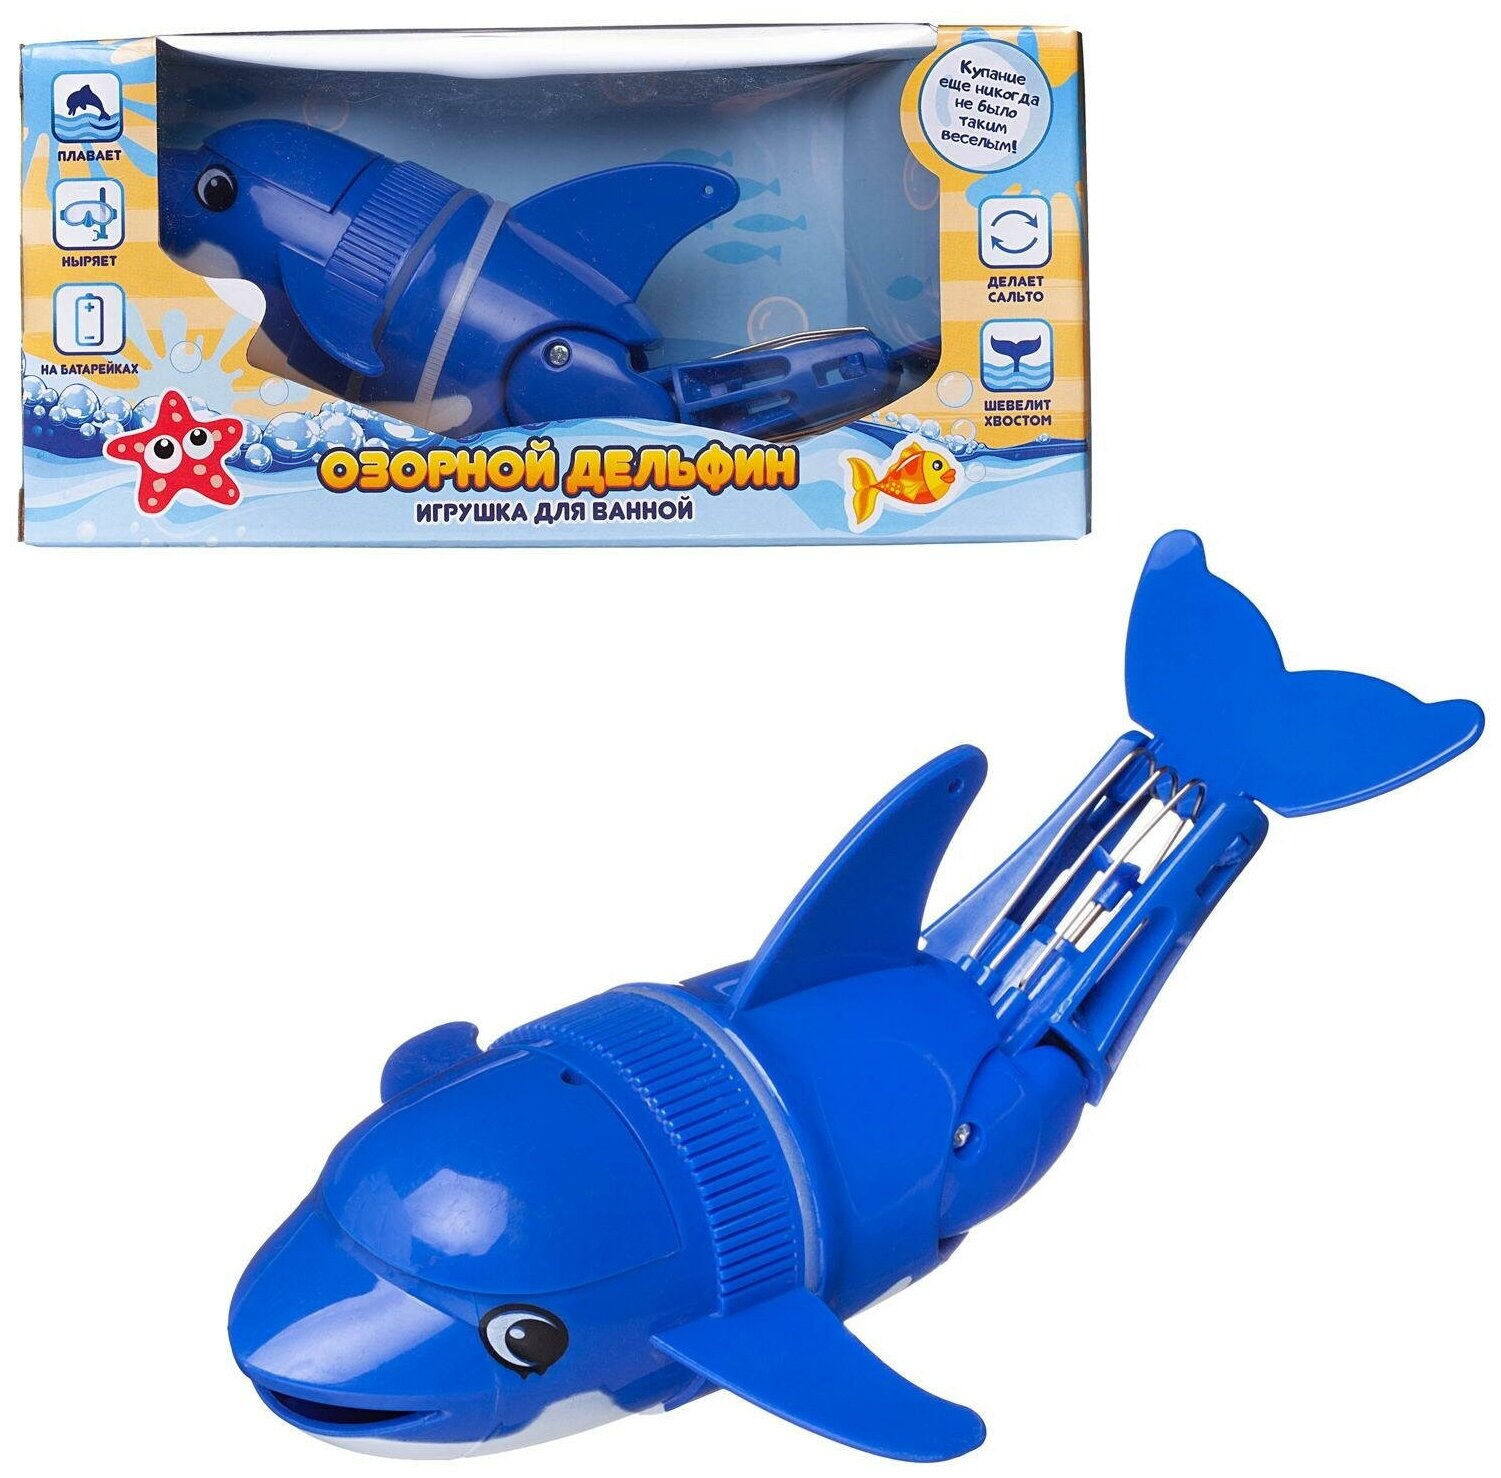 Игрушка для ванной Abtoys Веселое купание Озорной дельфин синий PT-01755/синий